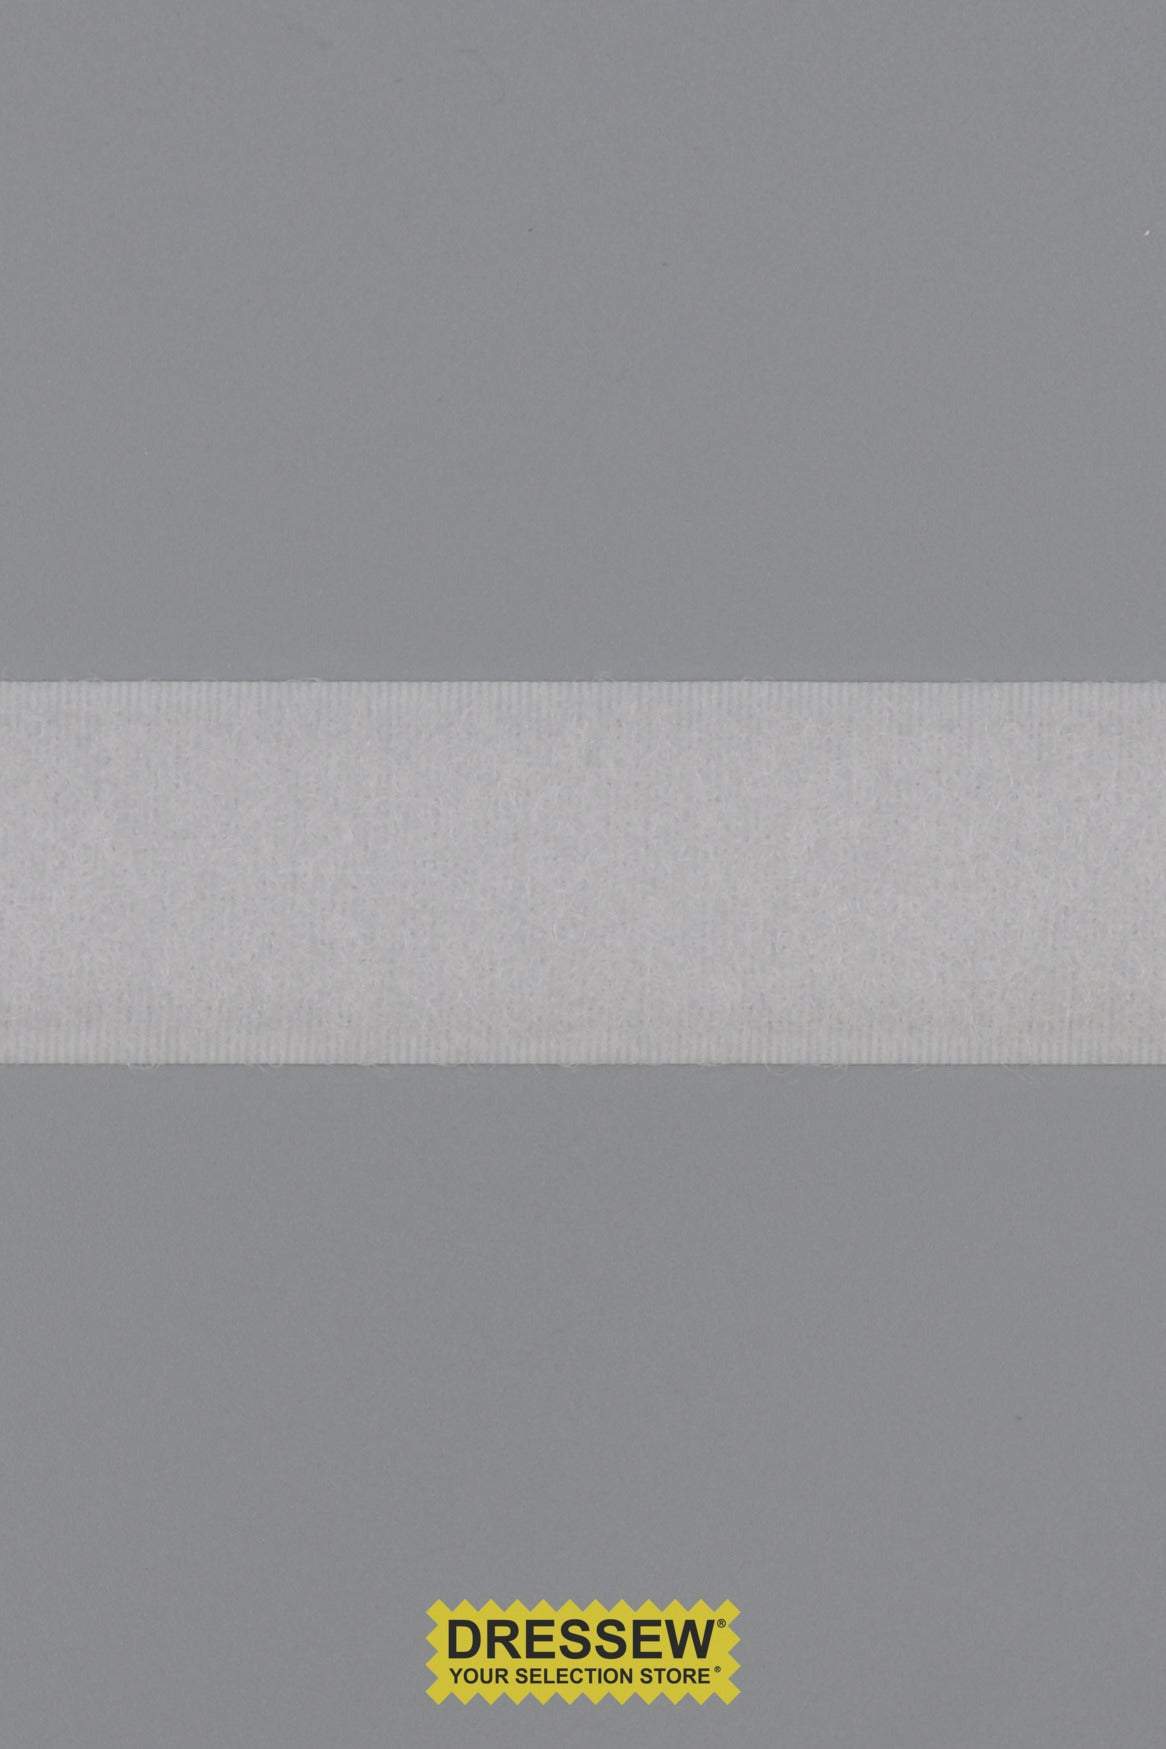 Loop Tape 25mm (1") White